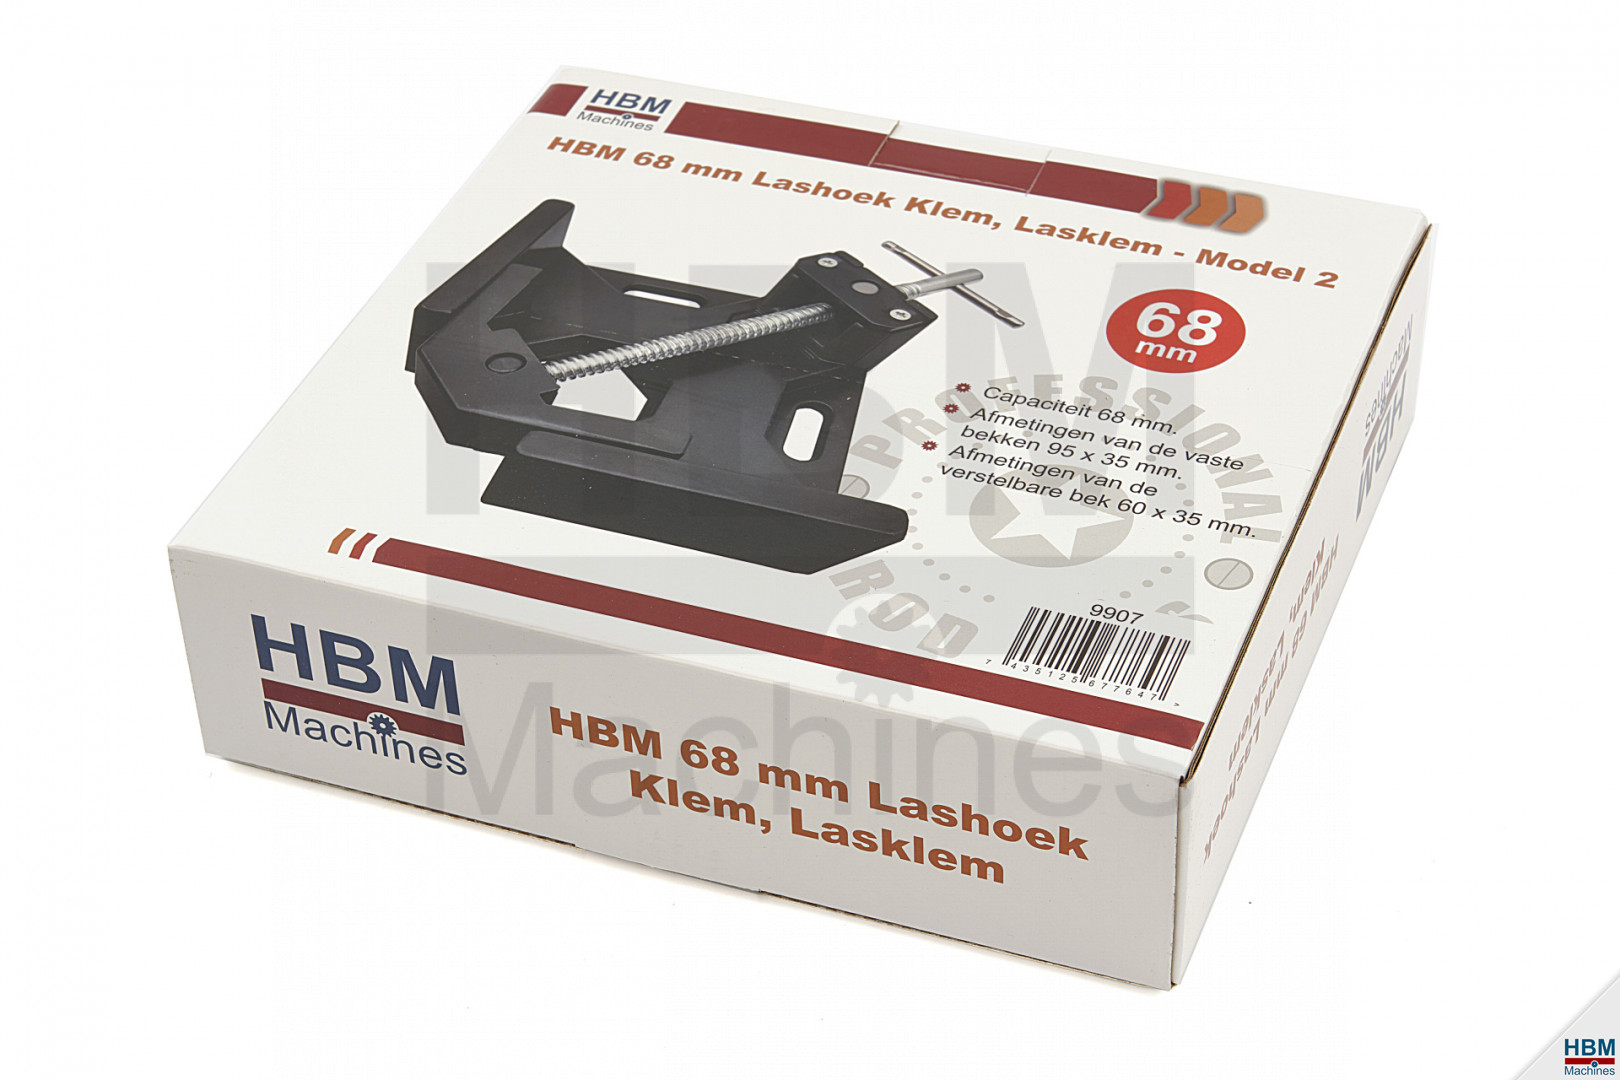 Pince d'angle de soudage HBM 68 mm, Presse d'angle de soudage - Modèle 2